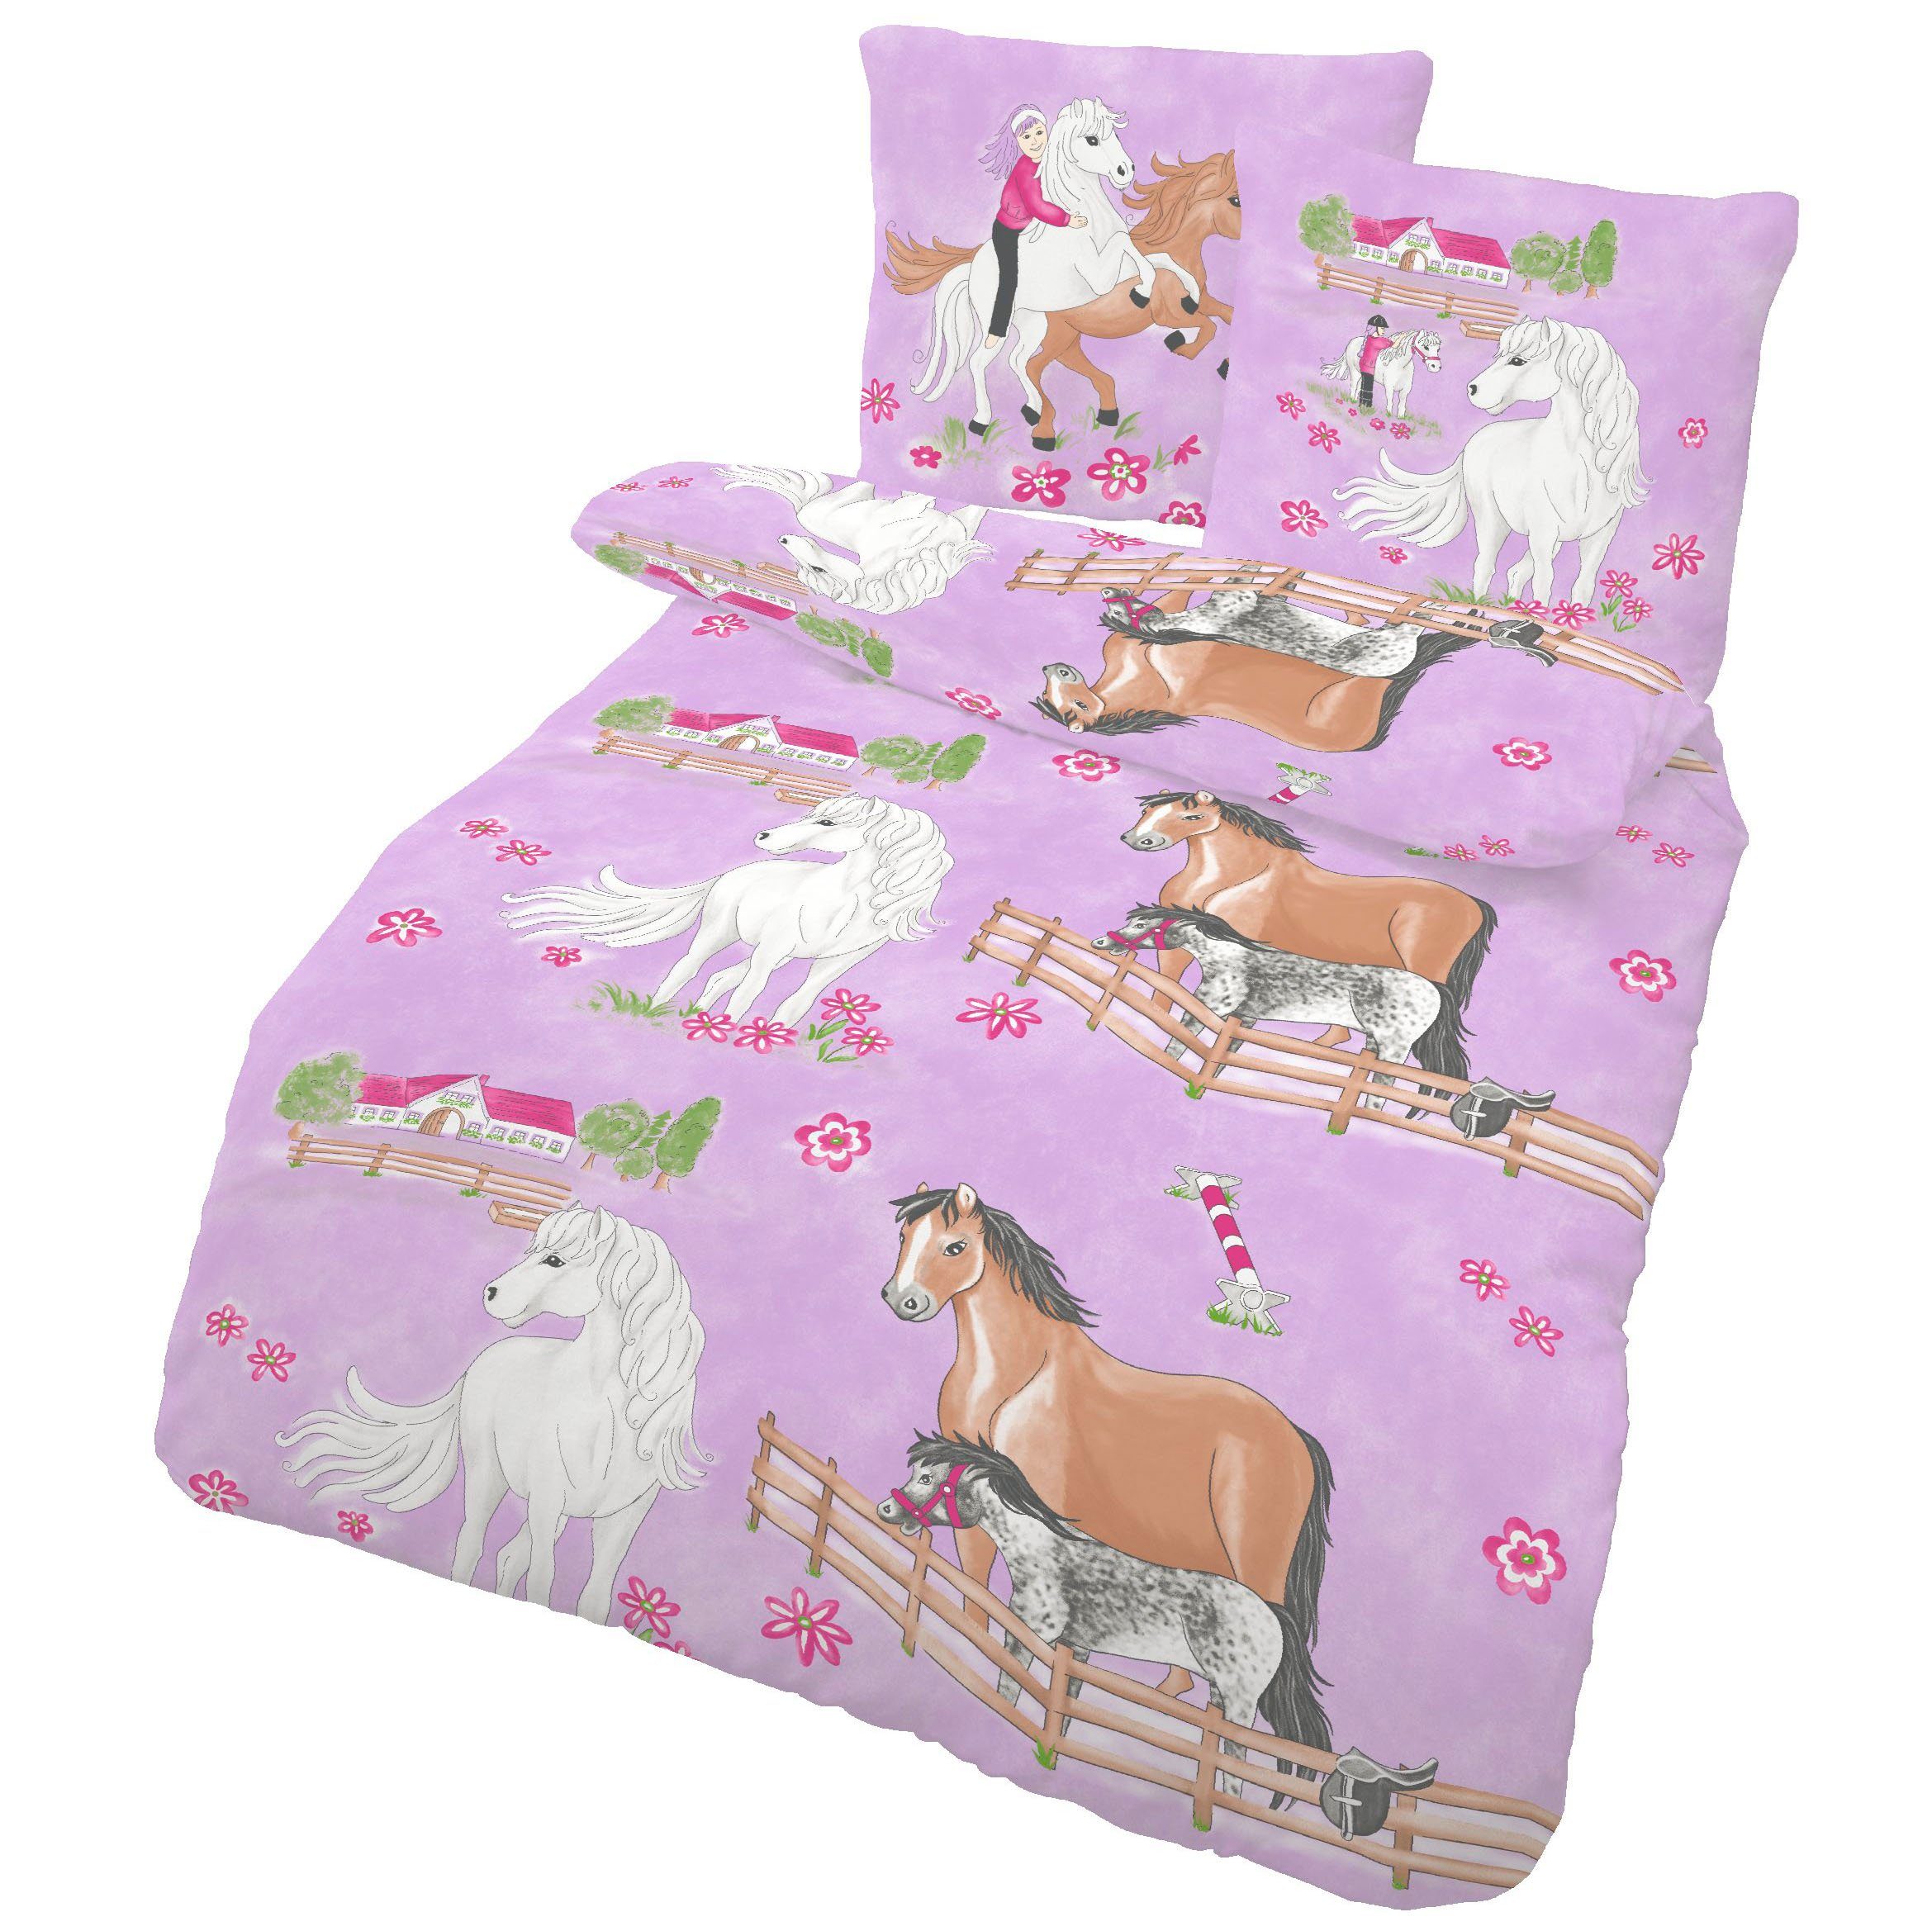 Kinderbettwäsche Pferde Bettwäsche 135x200 2tlg. - 100% Baumwolle - Pony  Kinderbettwäsche für Mädchen - Renforce Bettwäsche-Set, LINKHOFF,  Bügelfrei, Atmungsaktiv